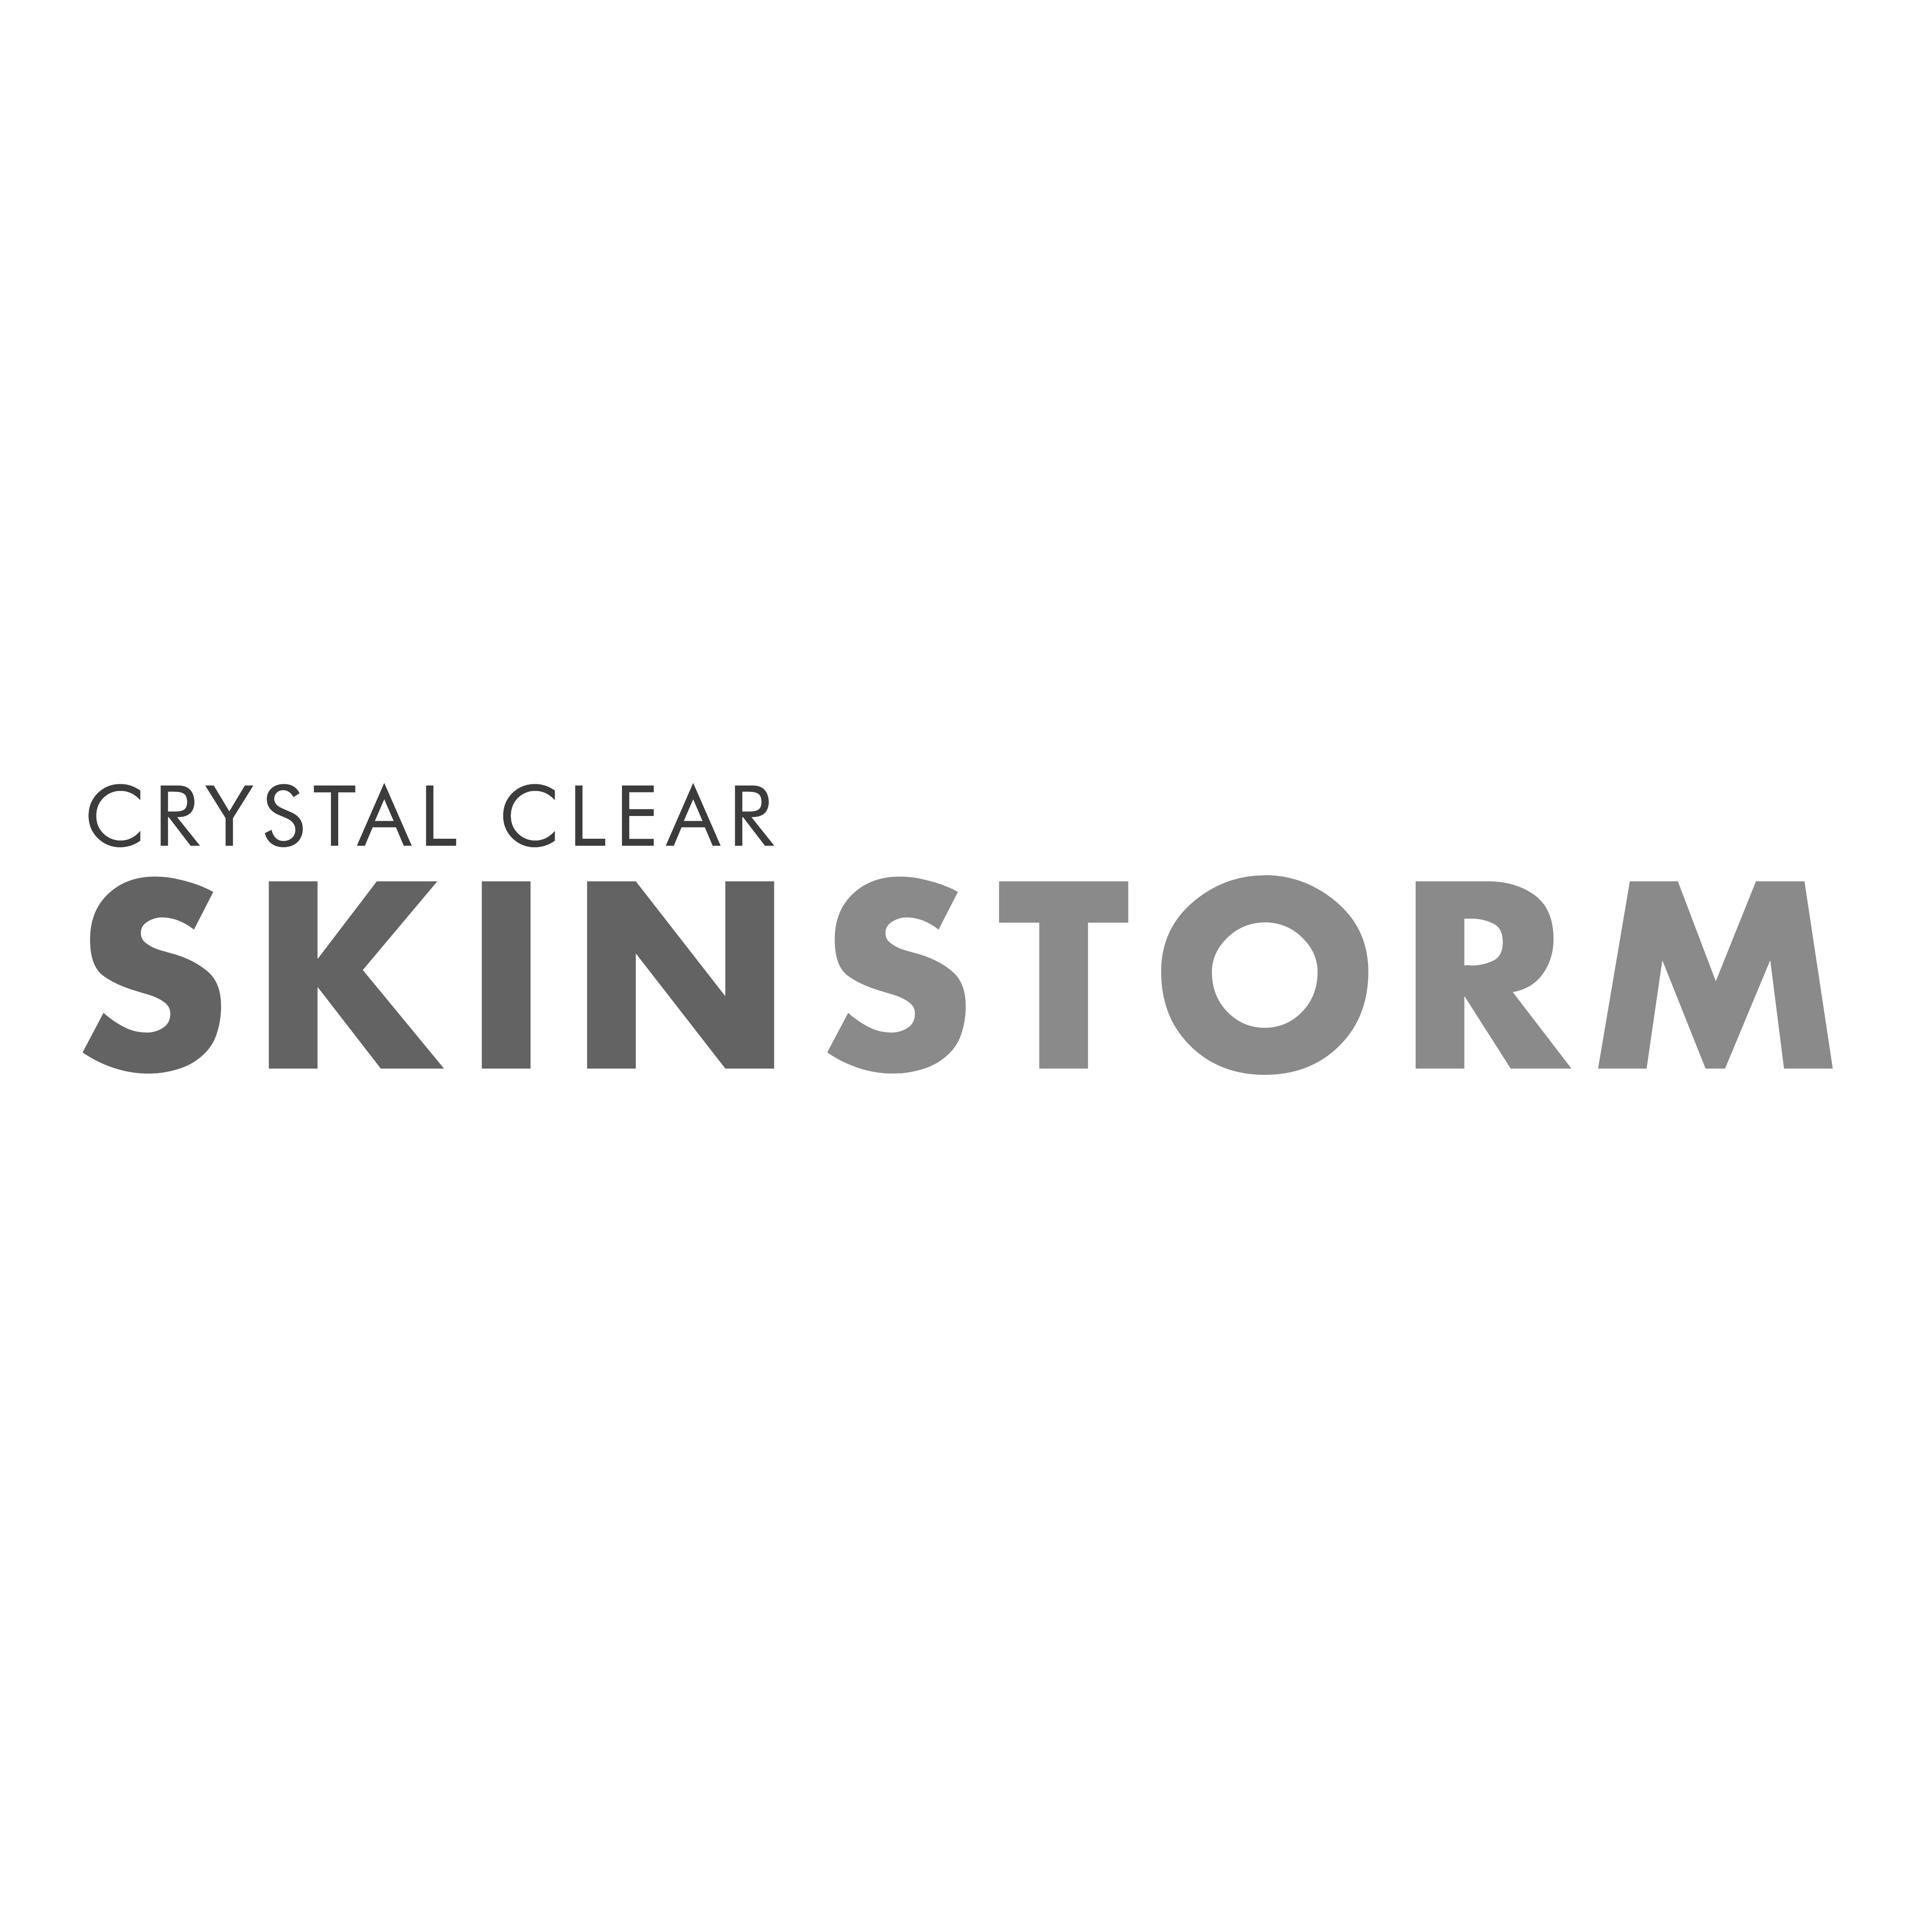 SkinStorm logo